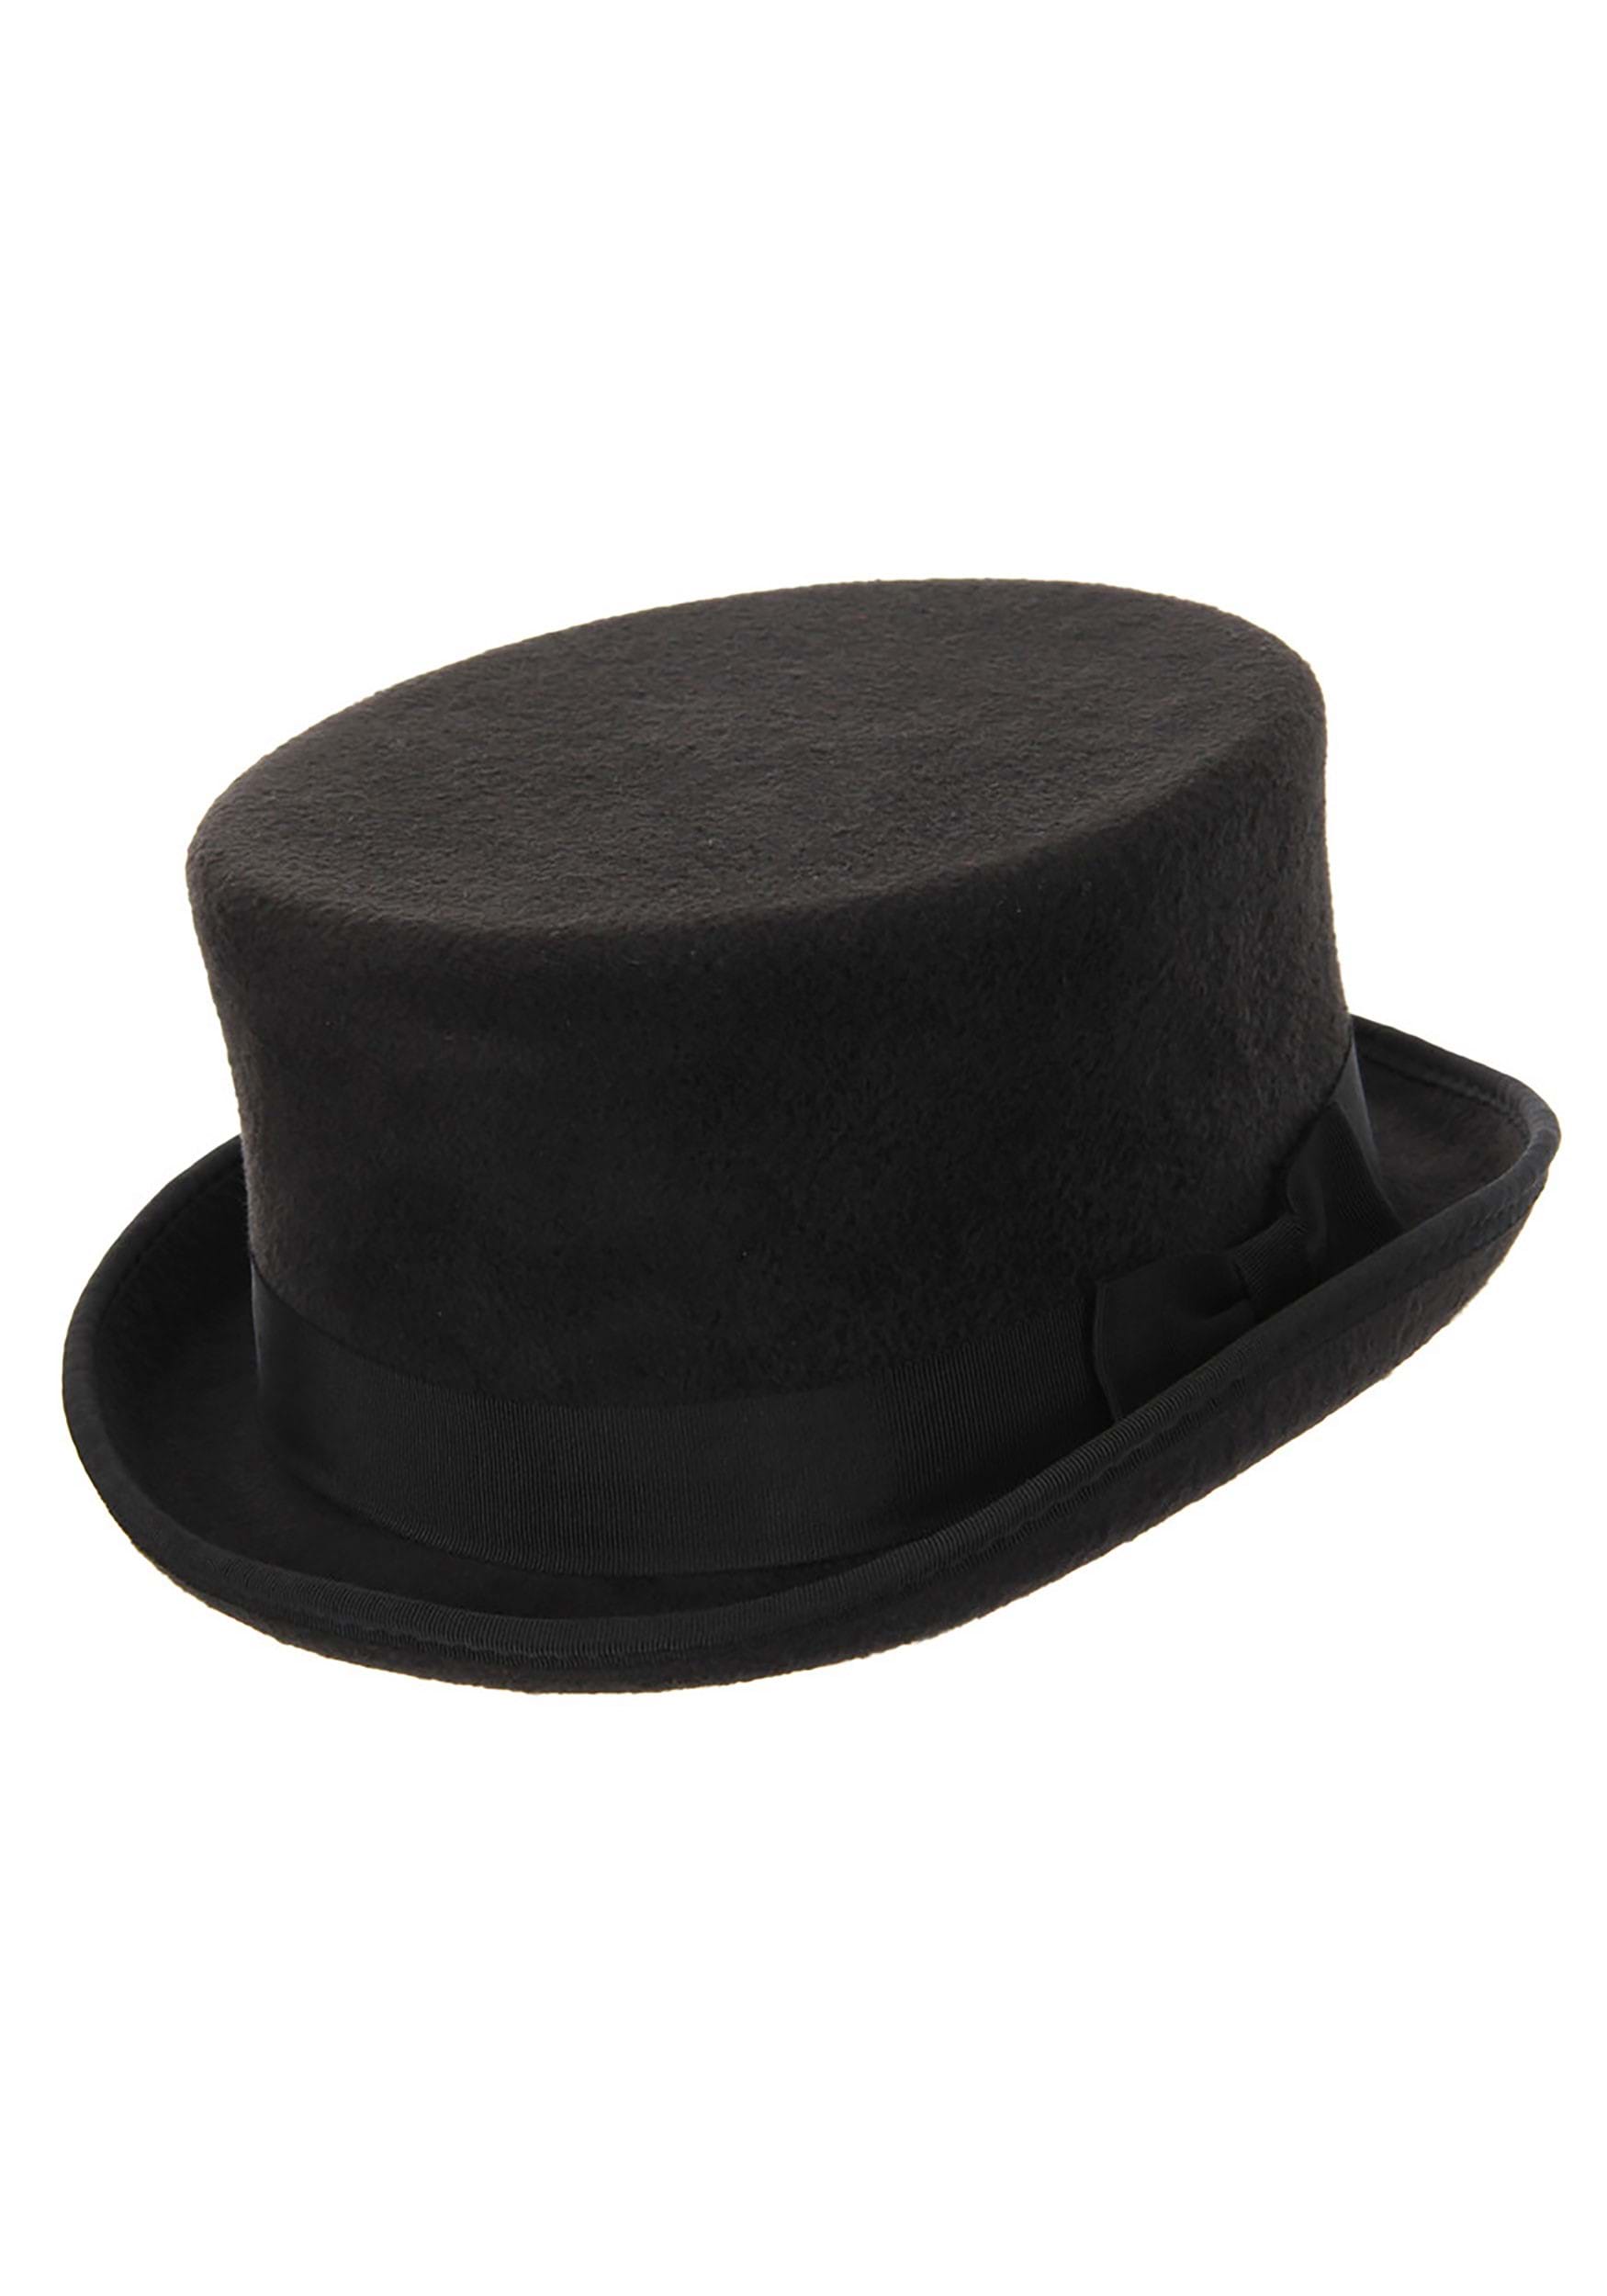 Black John Bull Top Fancy Dress Costume Hat , Steampunk Fancy Dress Costume Accessories